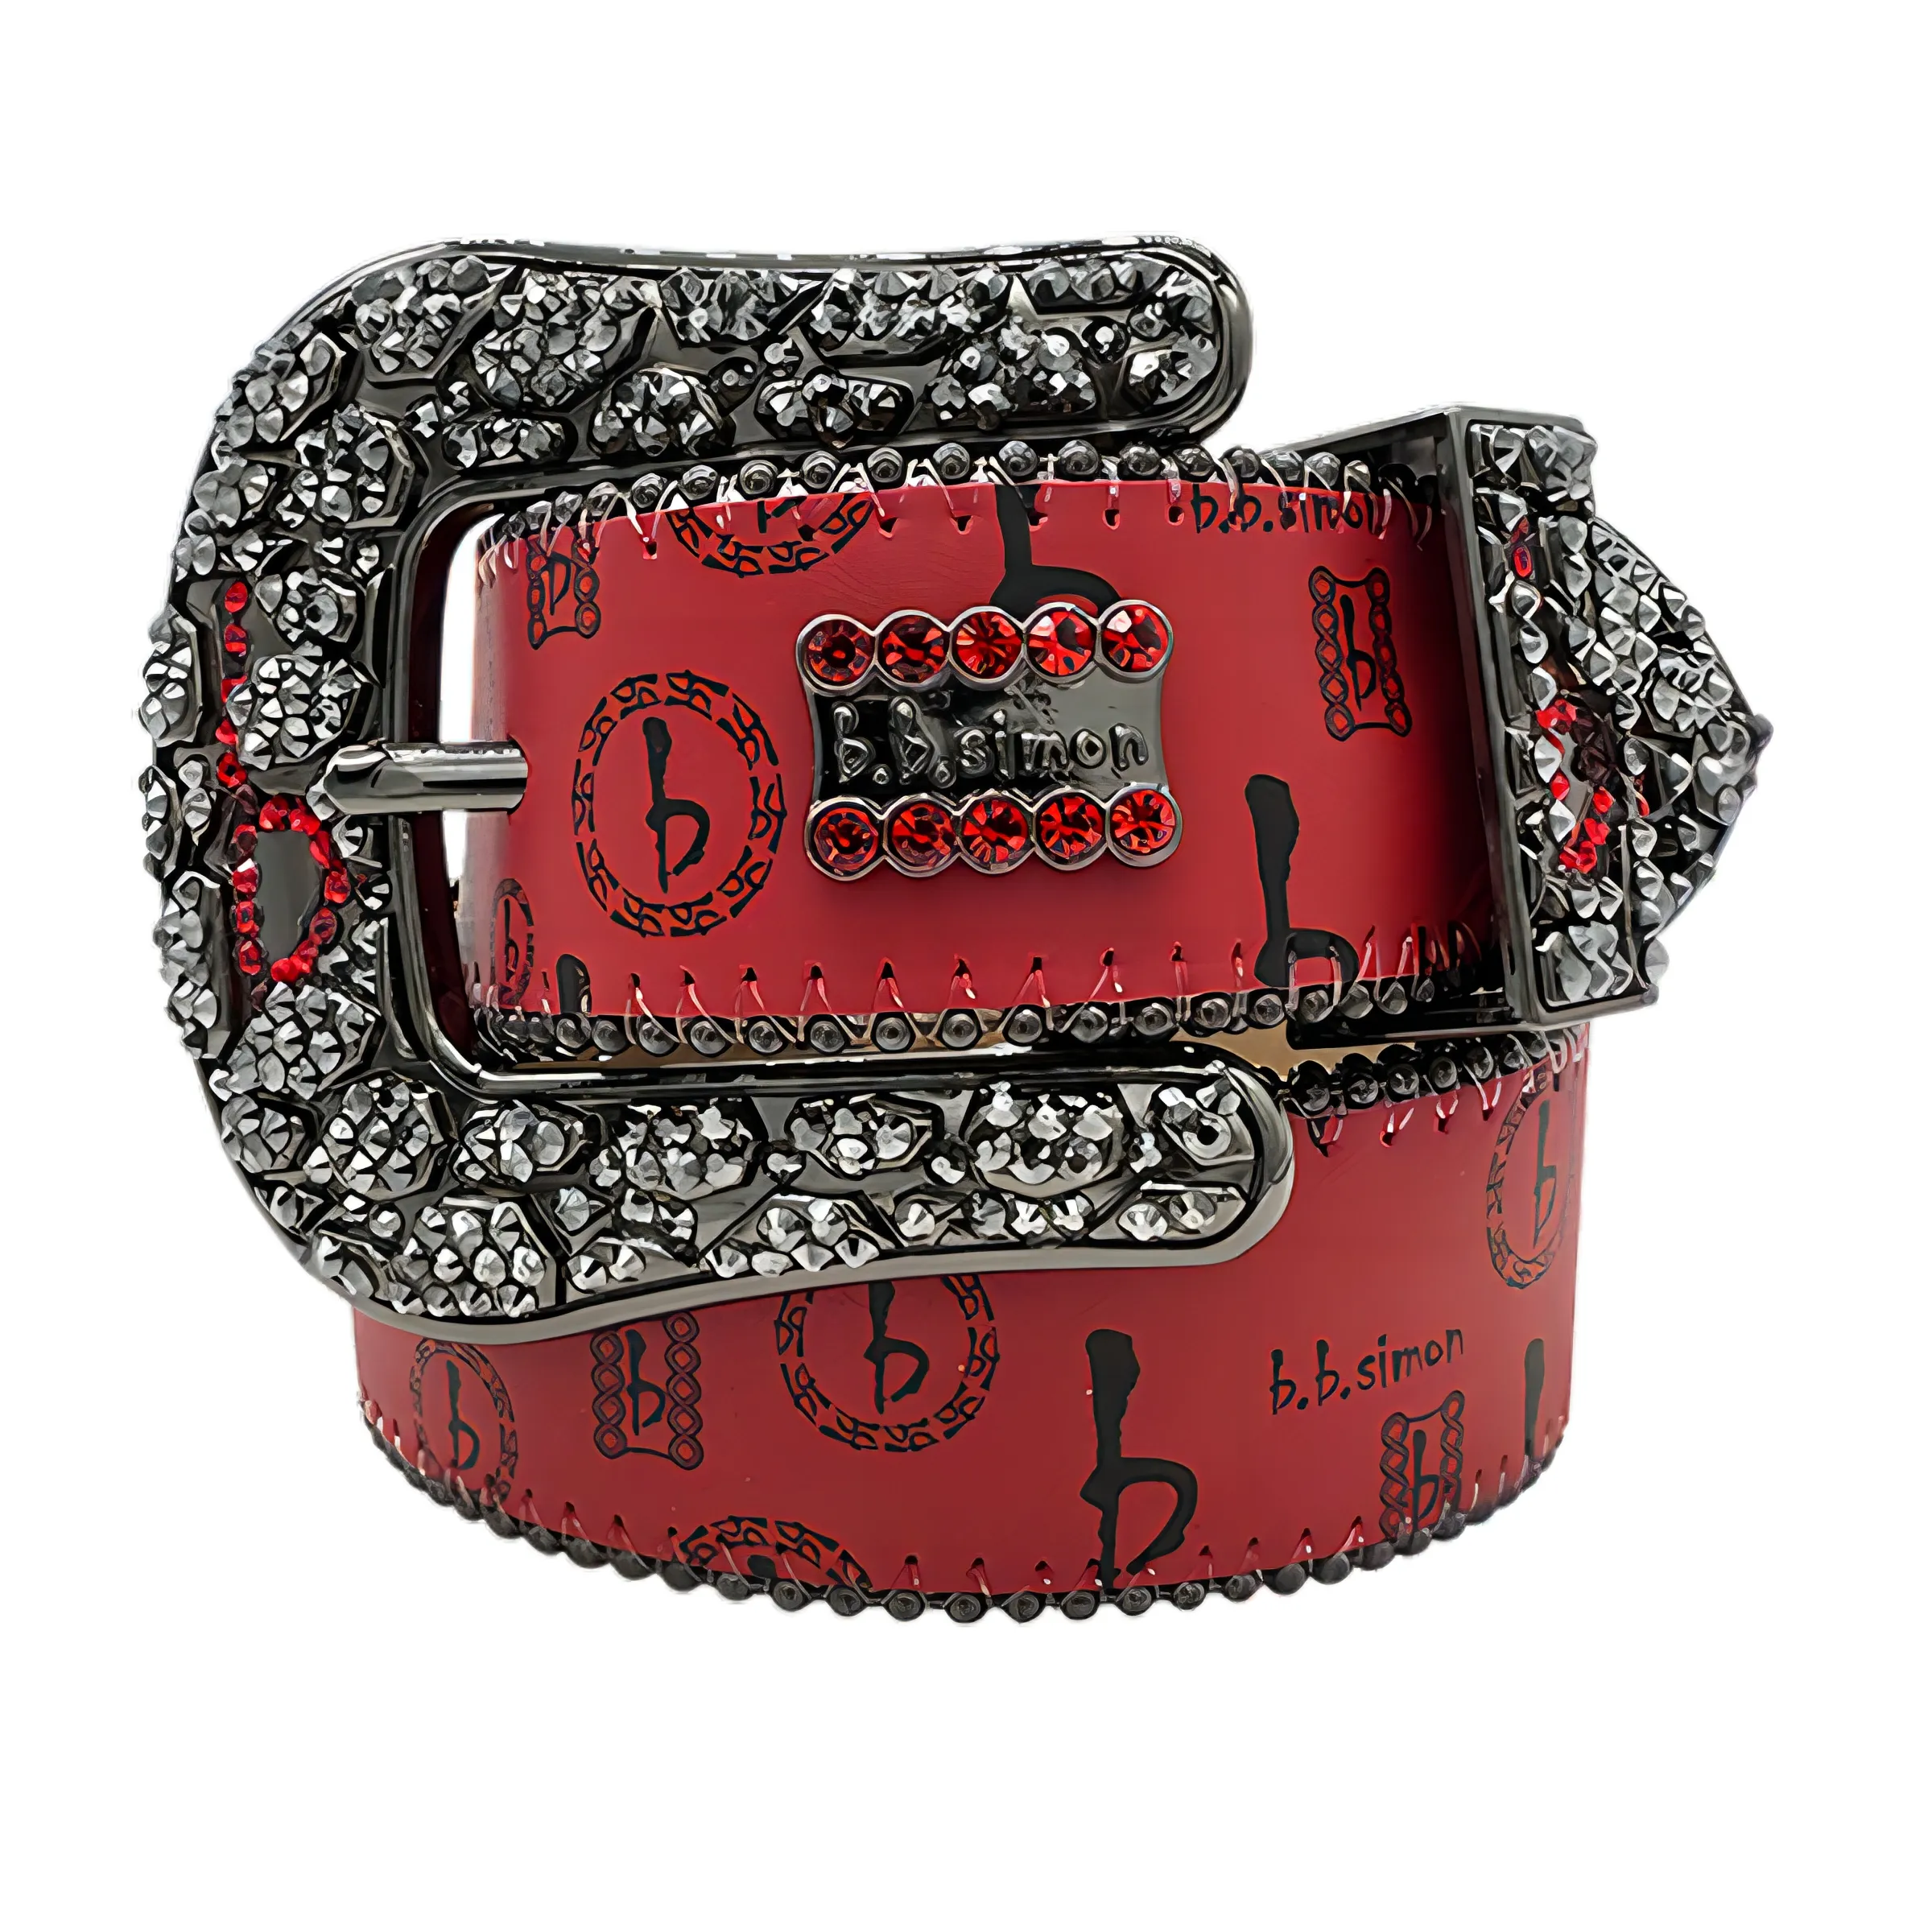 Cinturones de diseñador de moda Bb Simon para mujeres y hombres, cinturón de diamantes brillantes, correa clásica con letras BB de diamantes